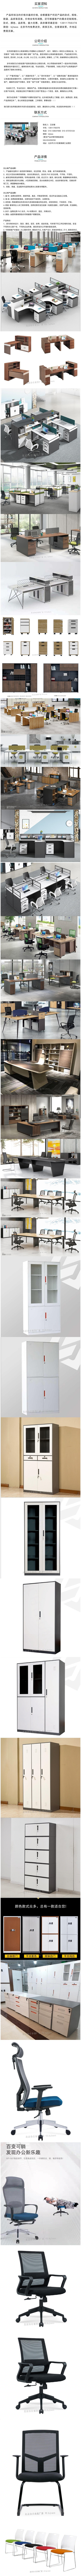 北京办公家具厂家定制异型办公家具 定制铁皮柜 定制办公桌椅